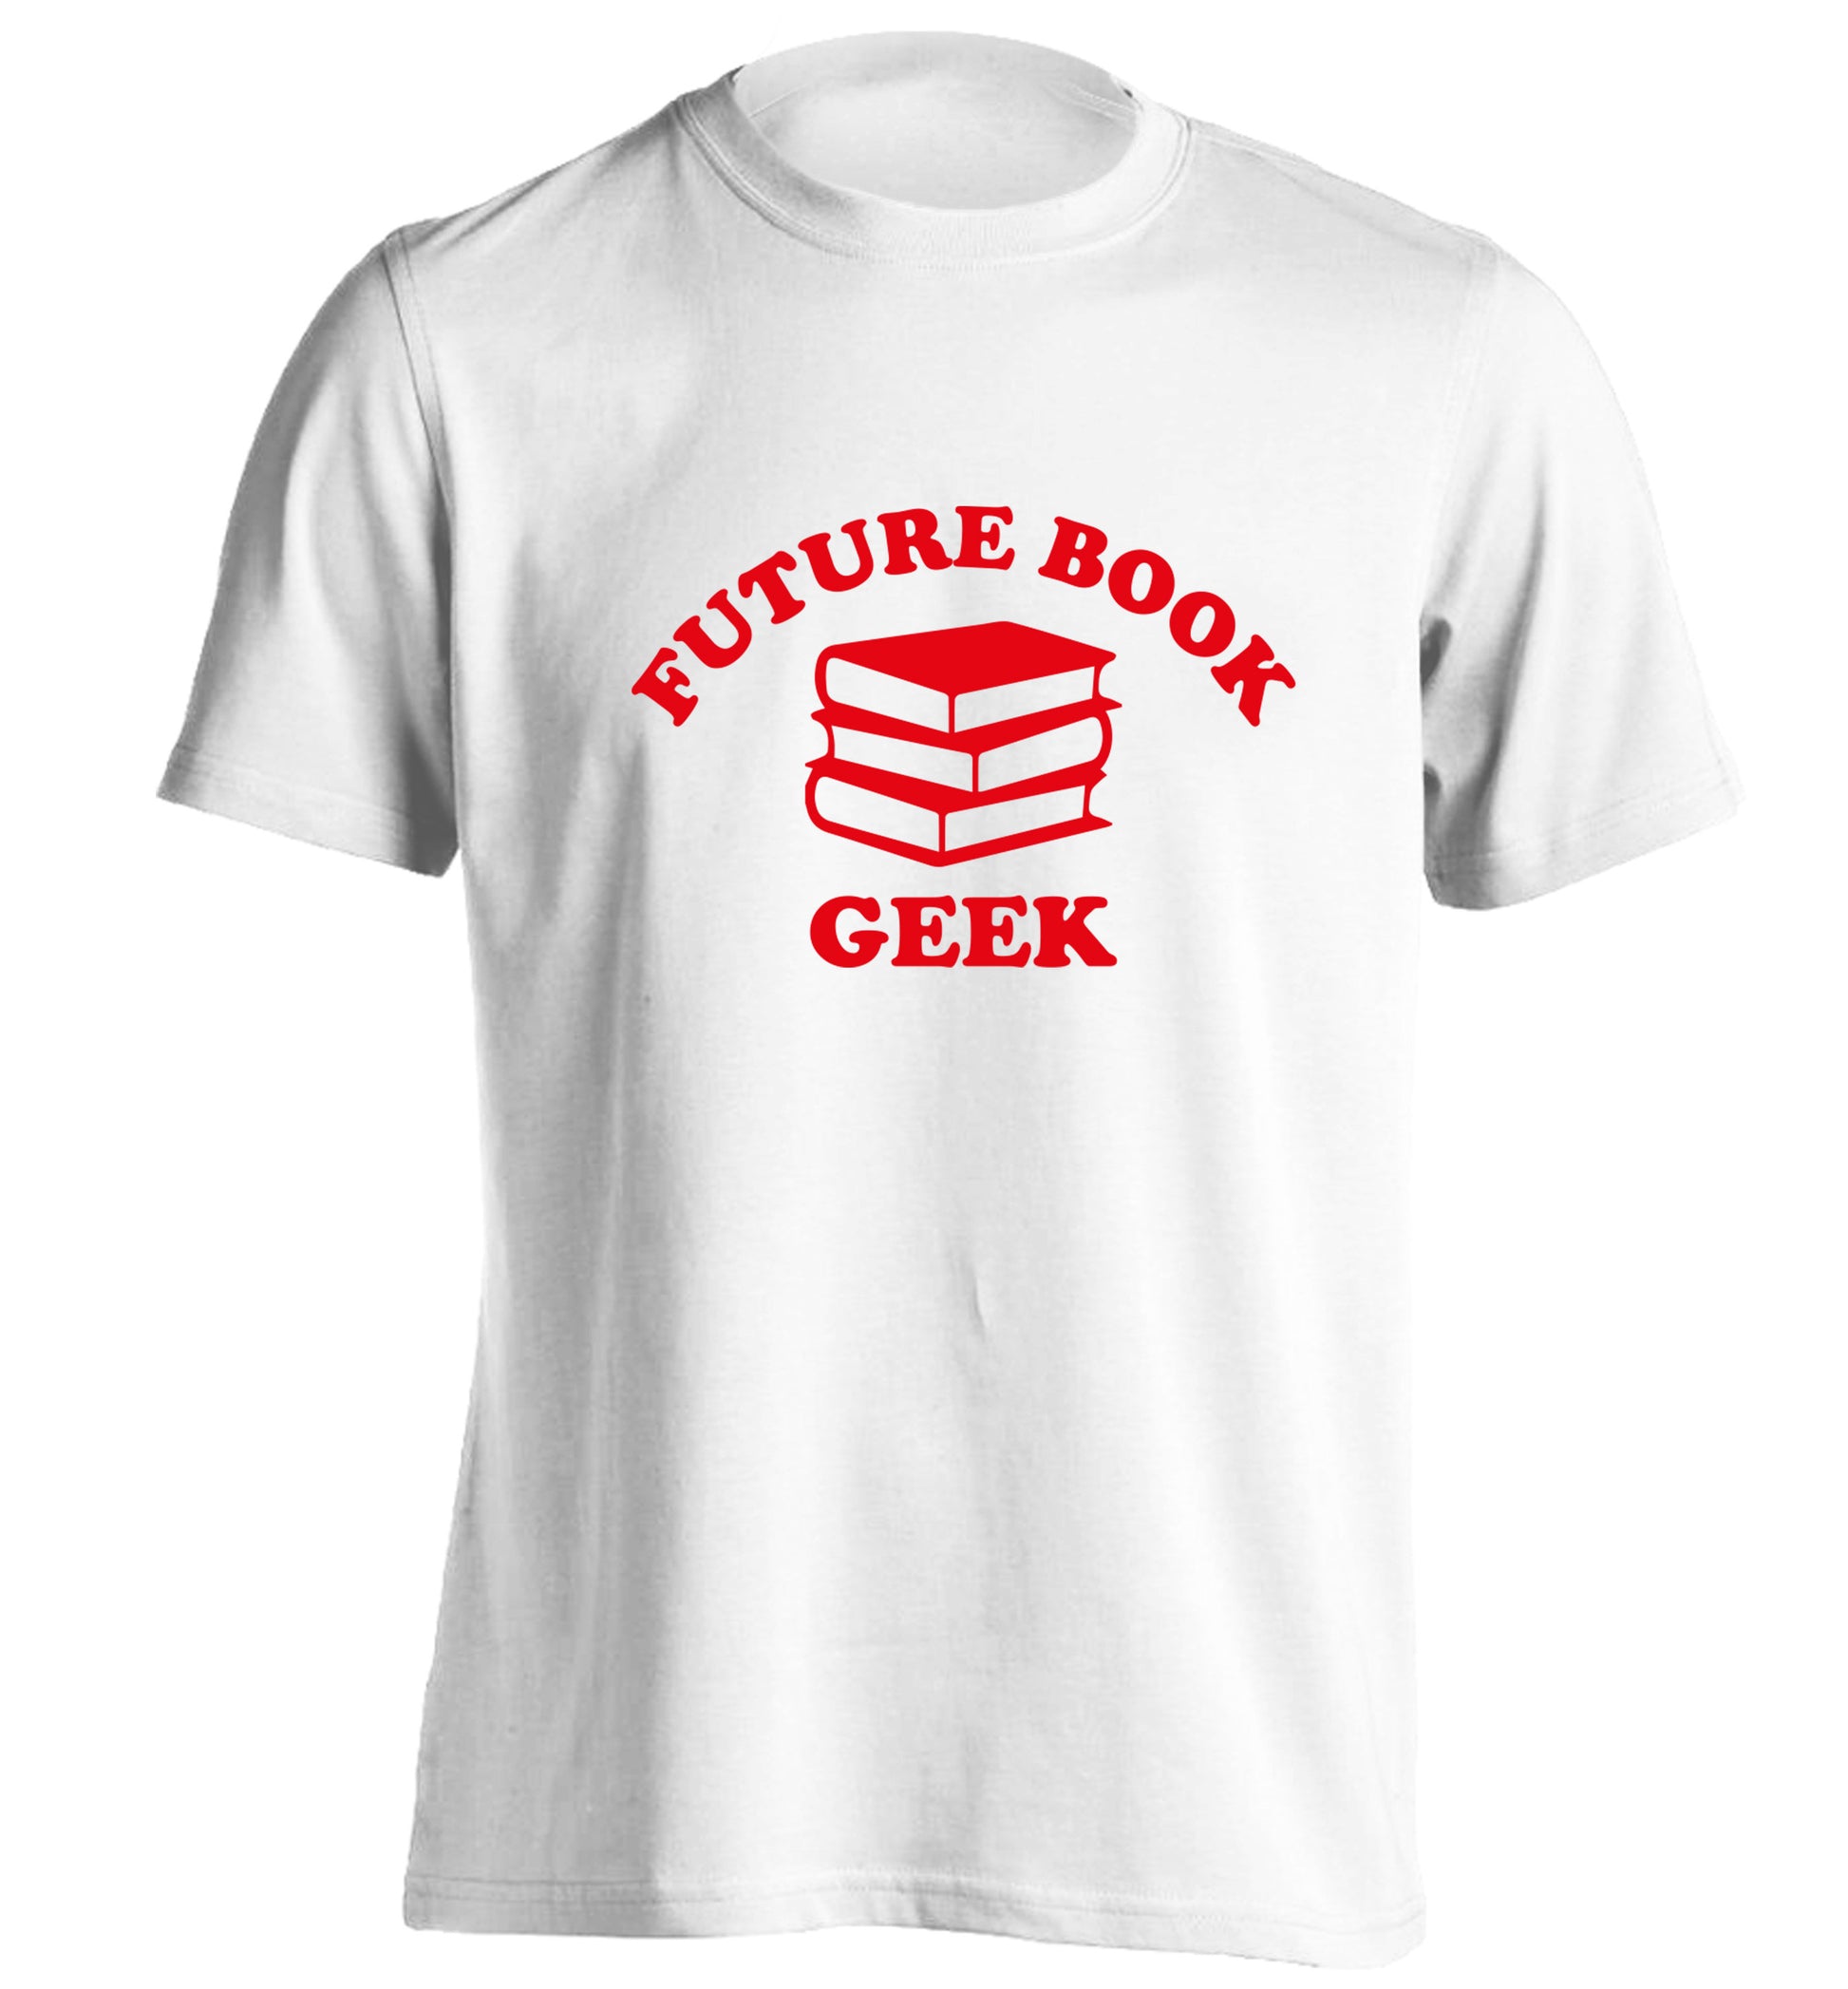 Future book geek adults unisex white Tshirt 2XL